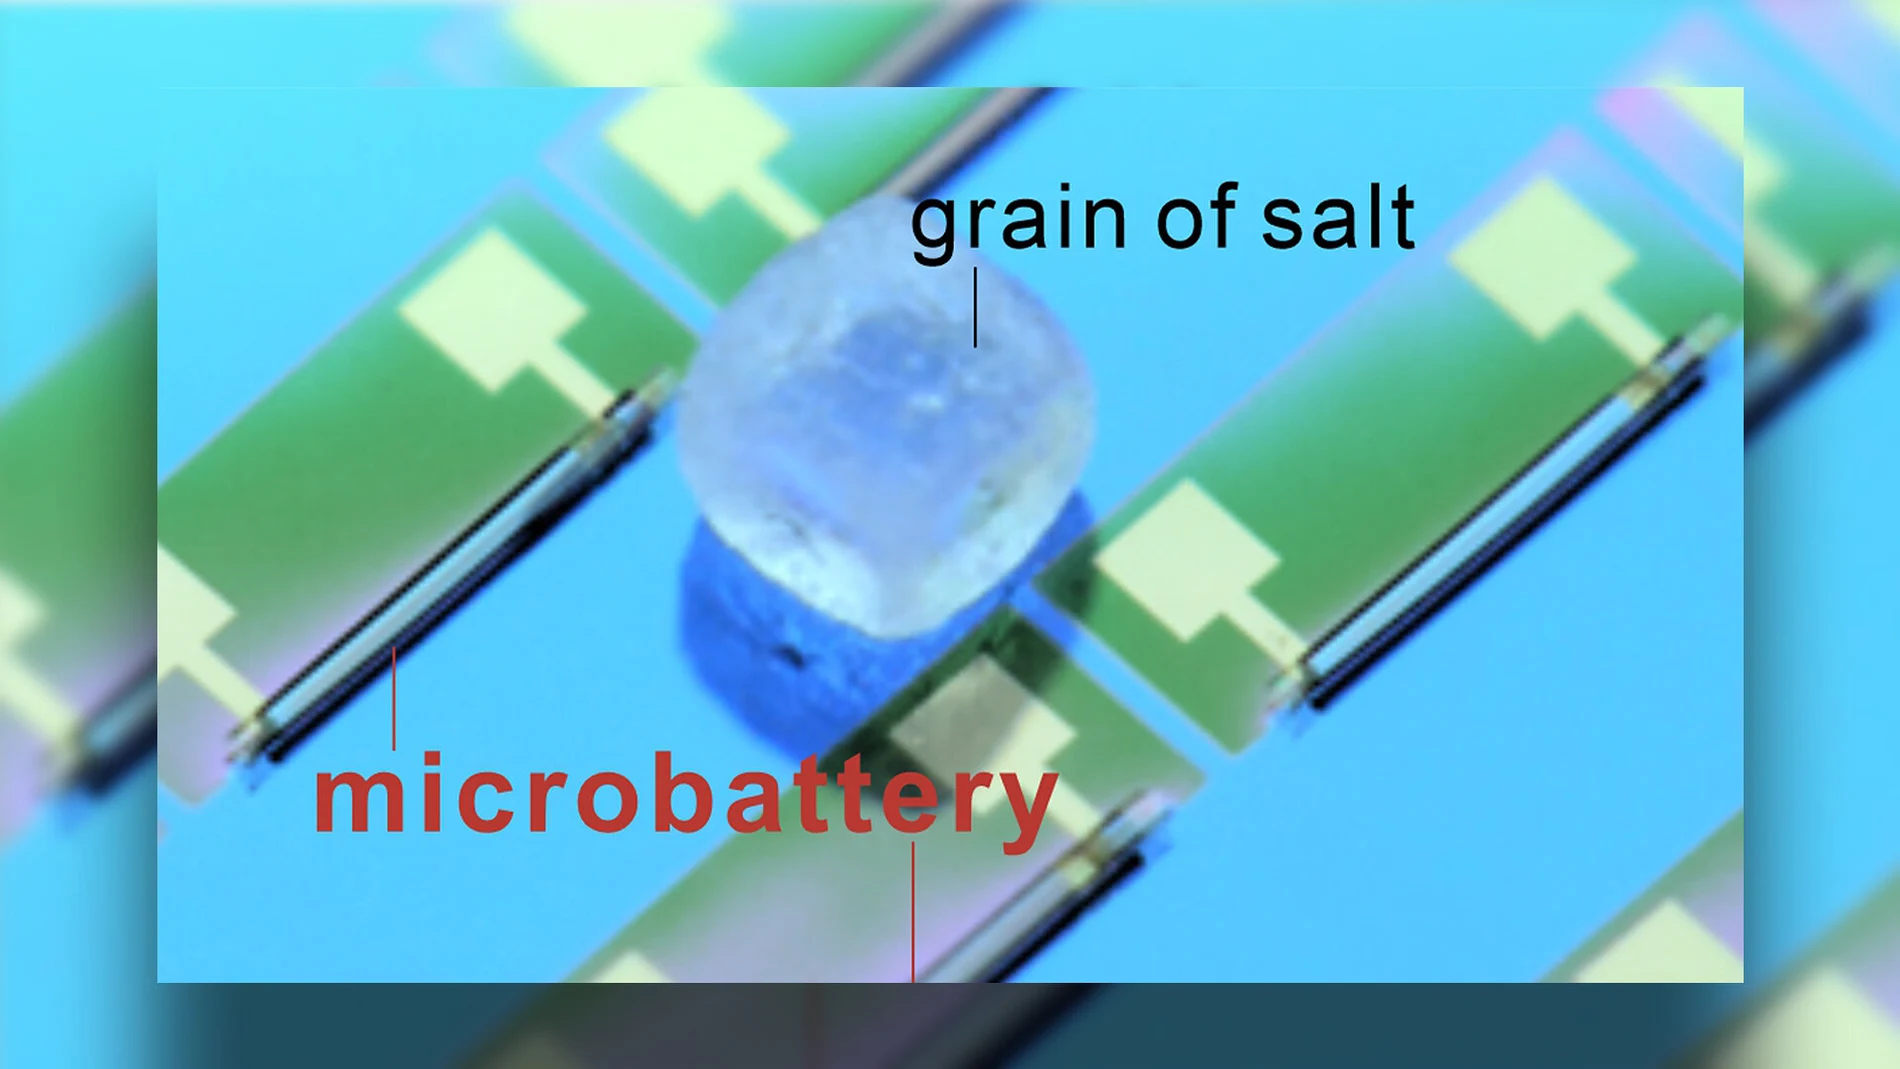 La batería más pequeña del mundo mide menos que un grano de sal